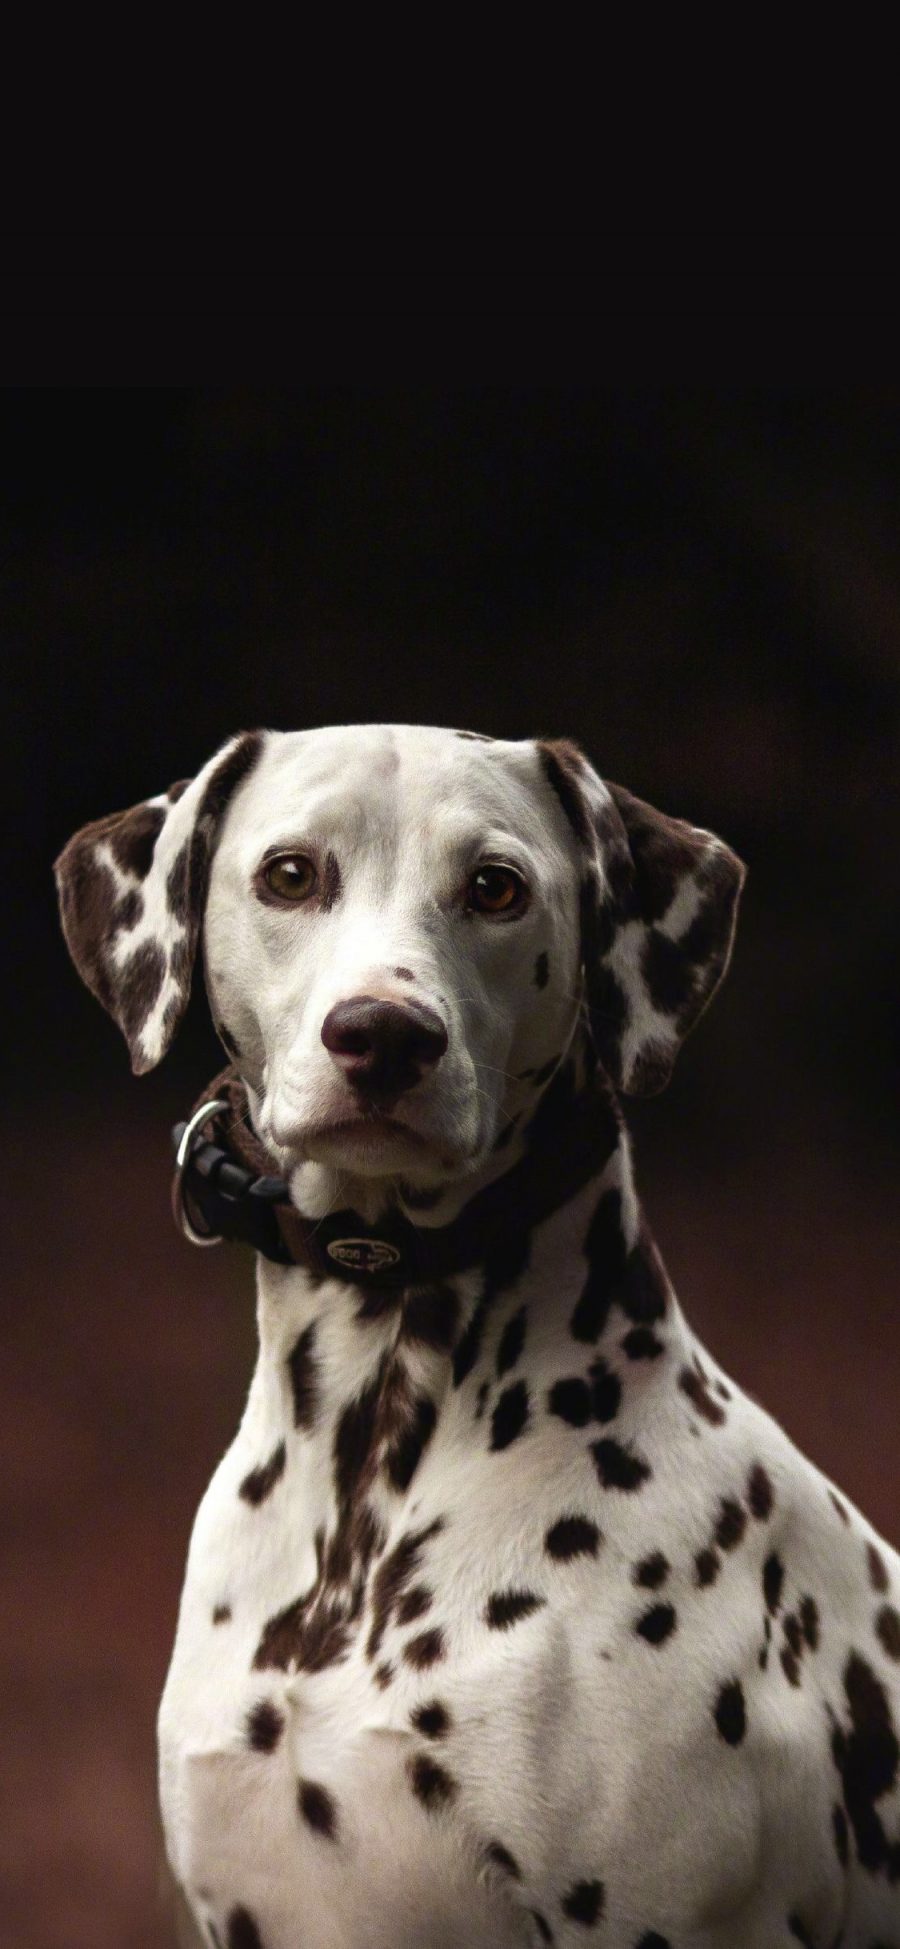 [2436×1125]斑点狗 黑白 犬 汪星人 宠物 苹果手机壁纸图片